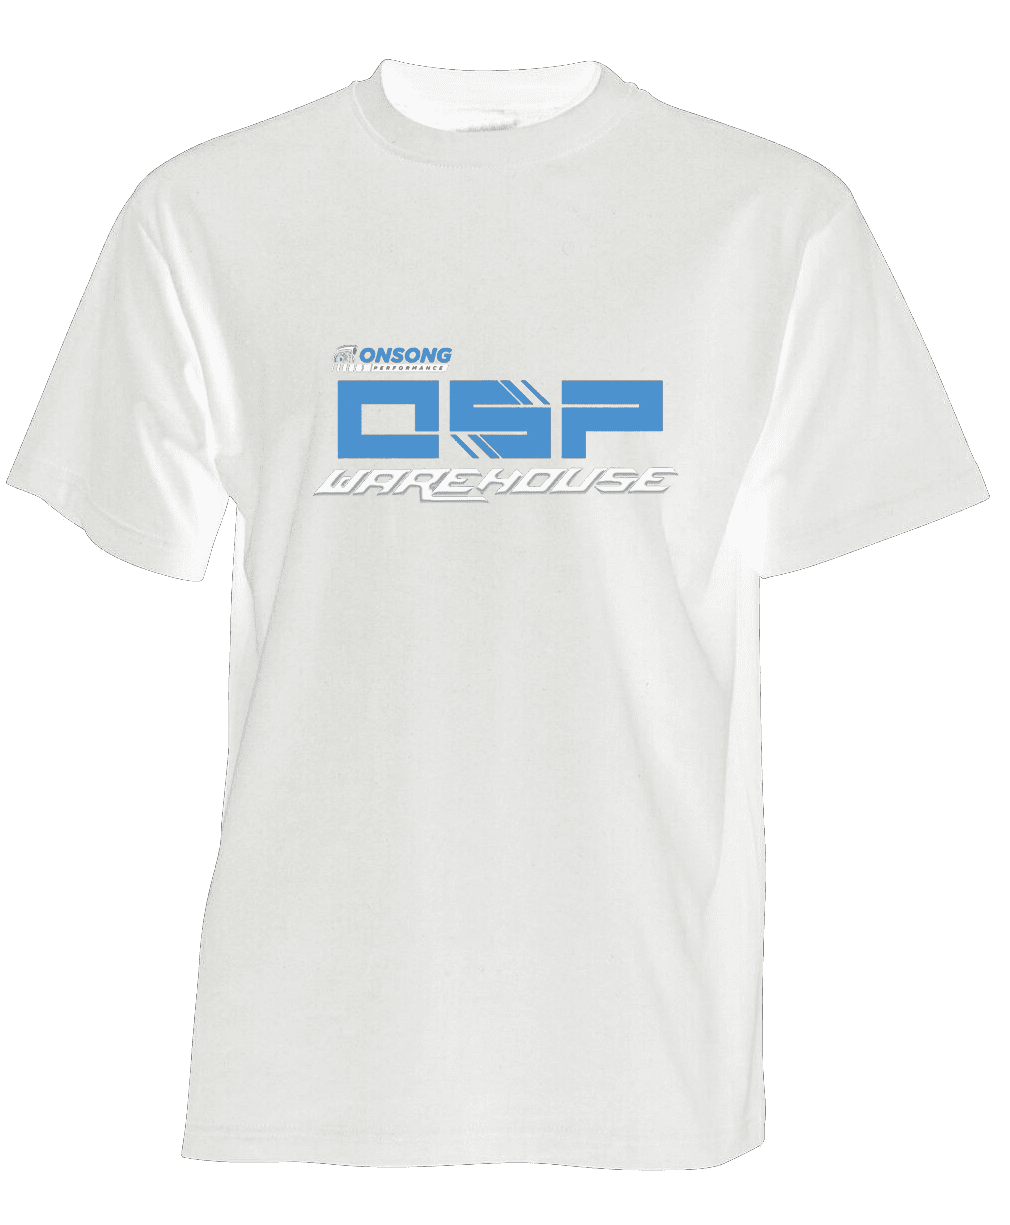 OSPWarehouse T Shirt